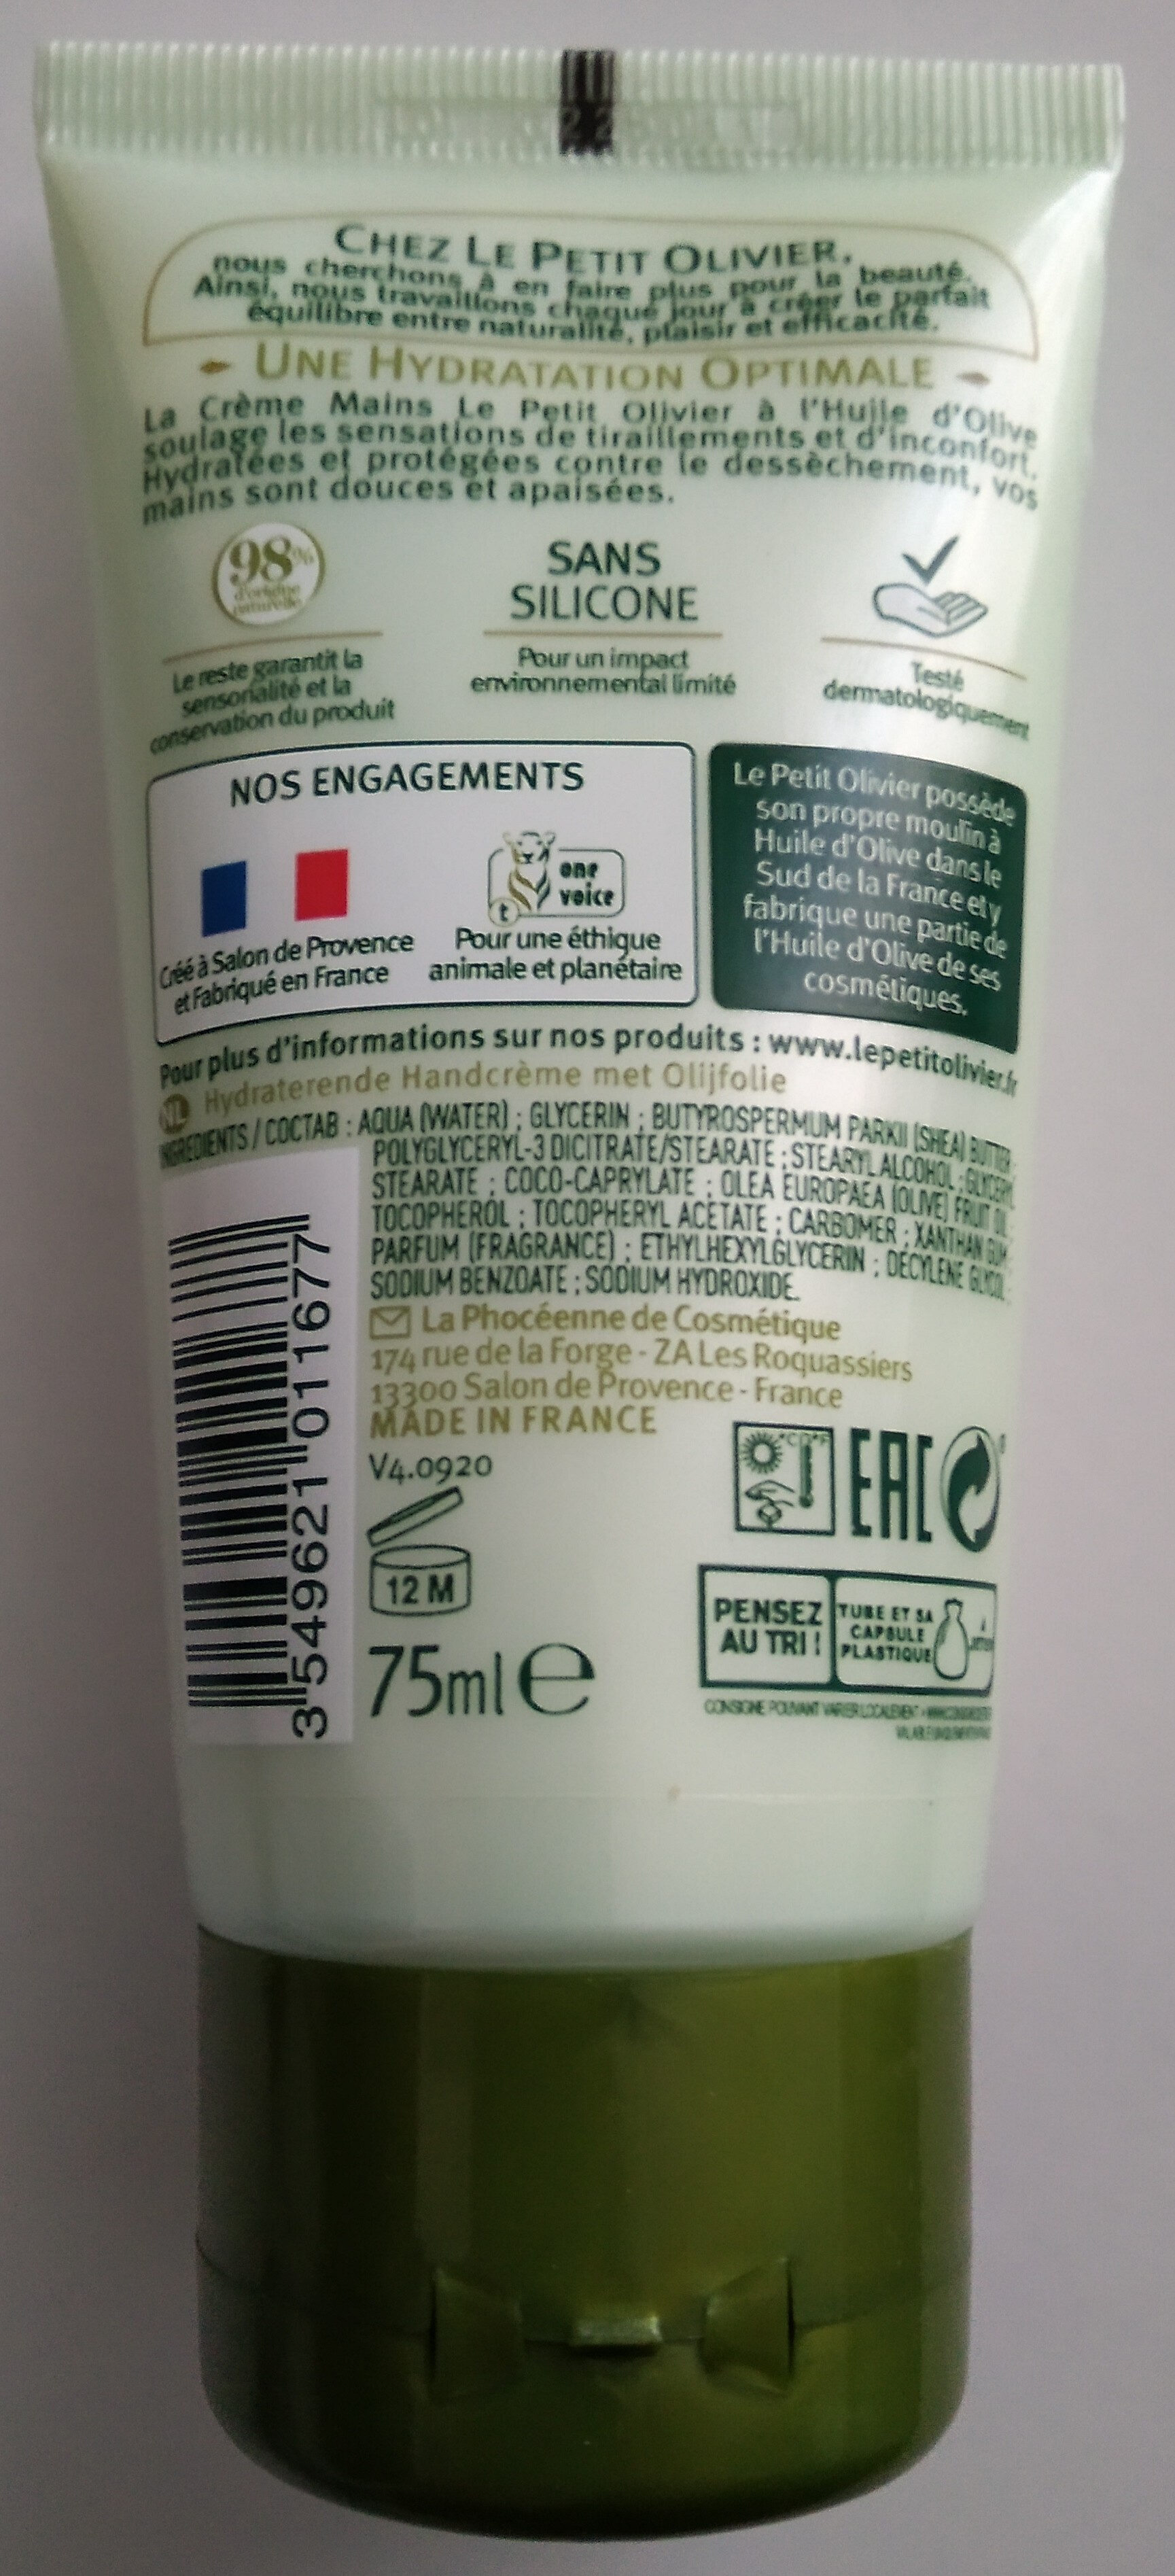 Crème mains hydratante à l'huile d'olive - Product - fr